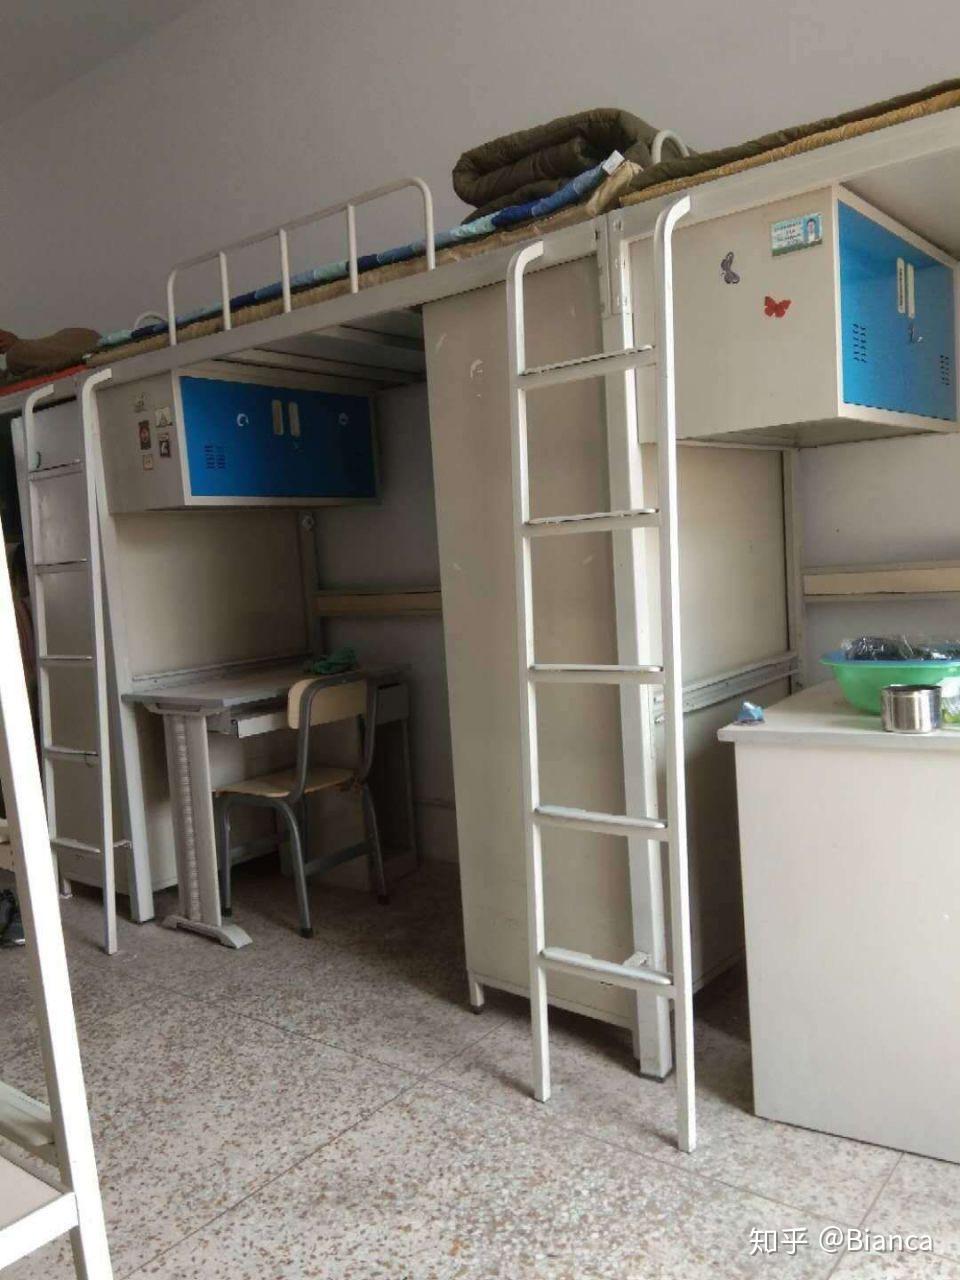 内蒙古农业大学的宿舍条件如何?校区内有哪些生活设施?